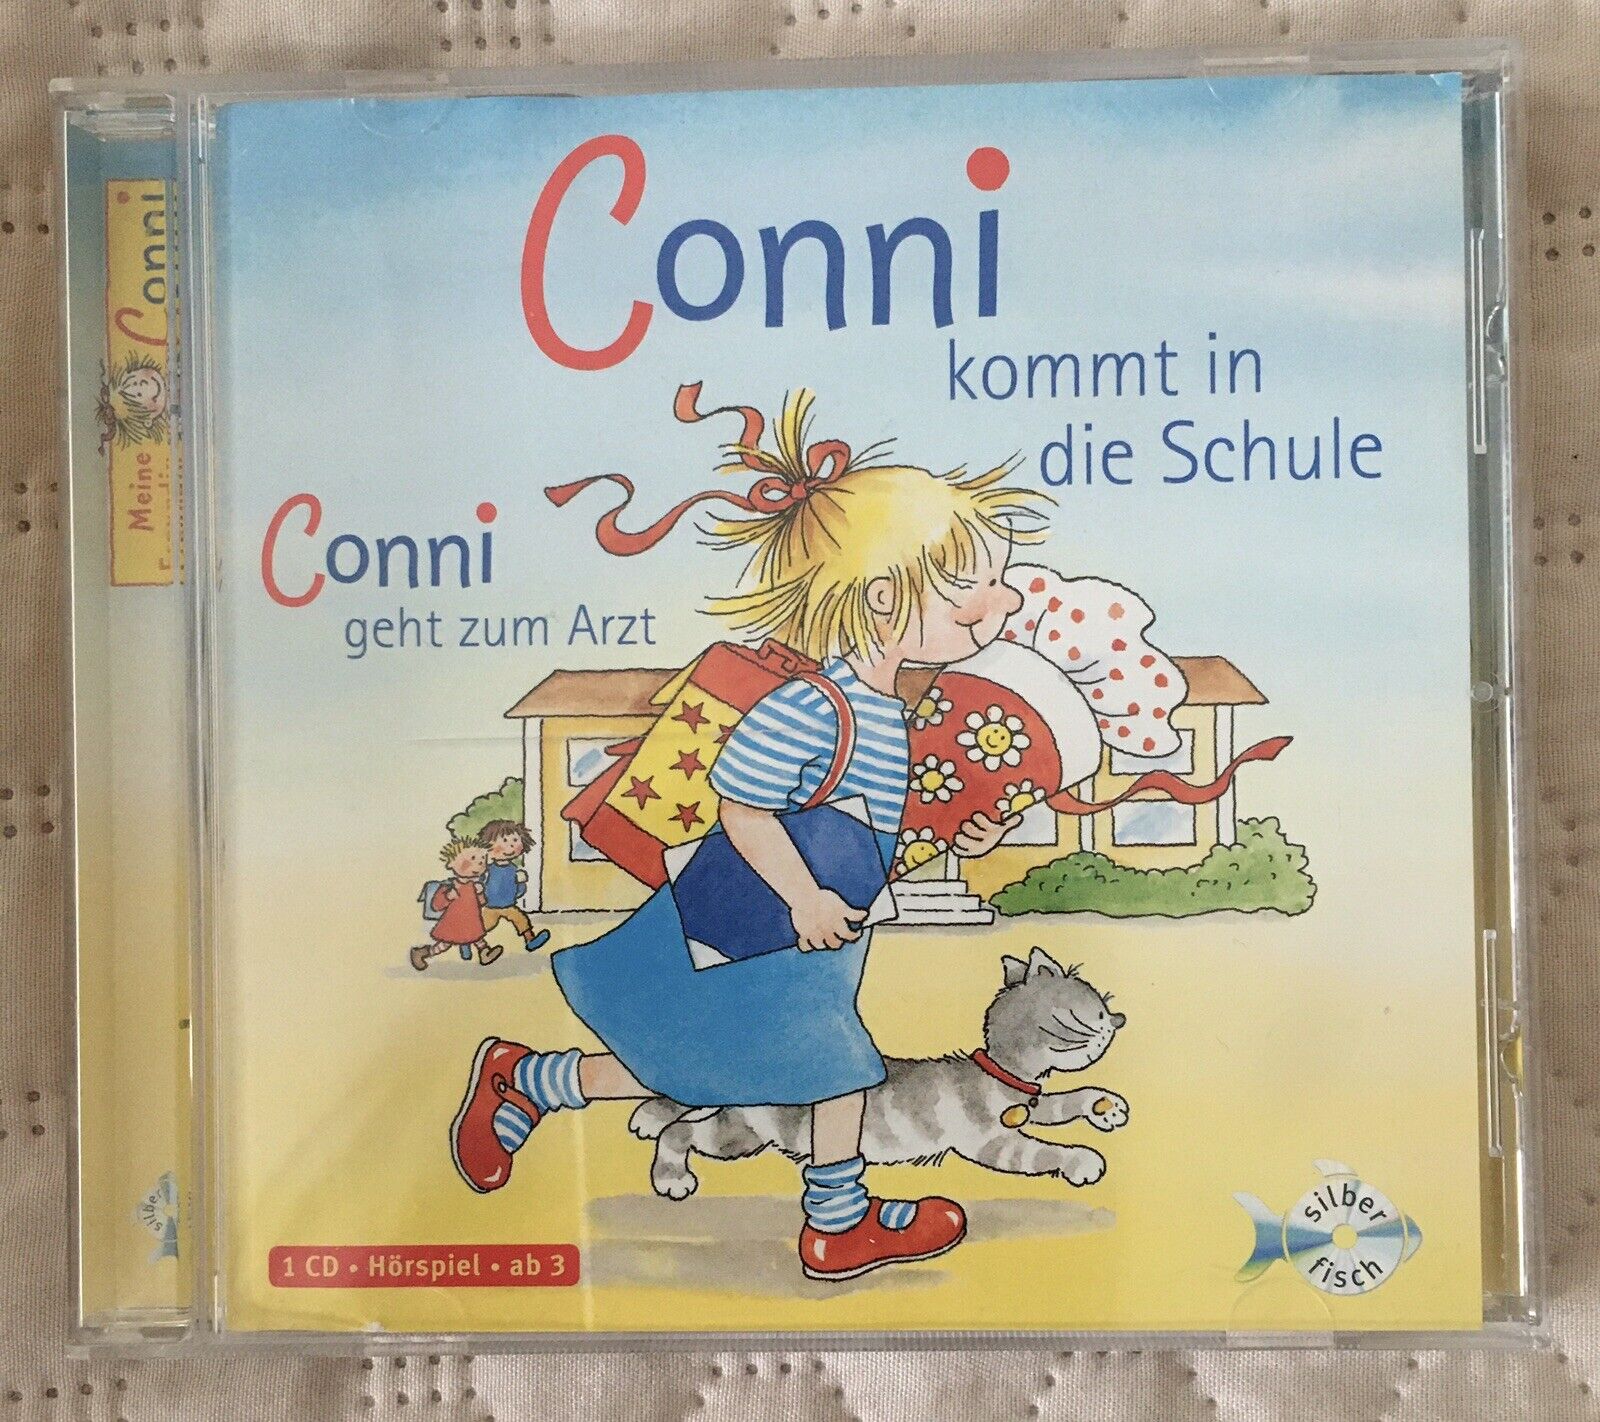 Conni kommt in die Schule / Conni geht zum Arzt von Liane Schneider (2007), 1 CD - Liane Schneider